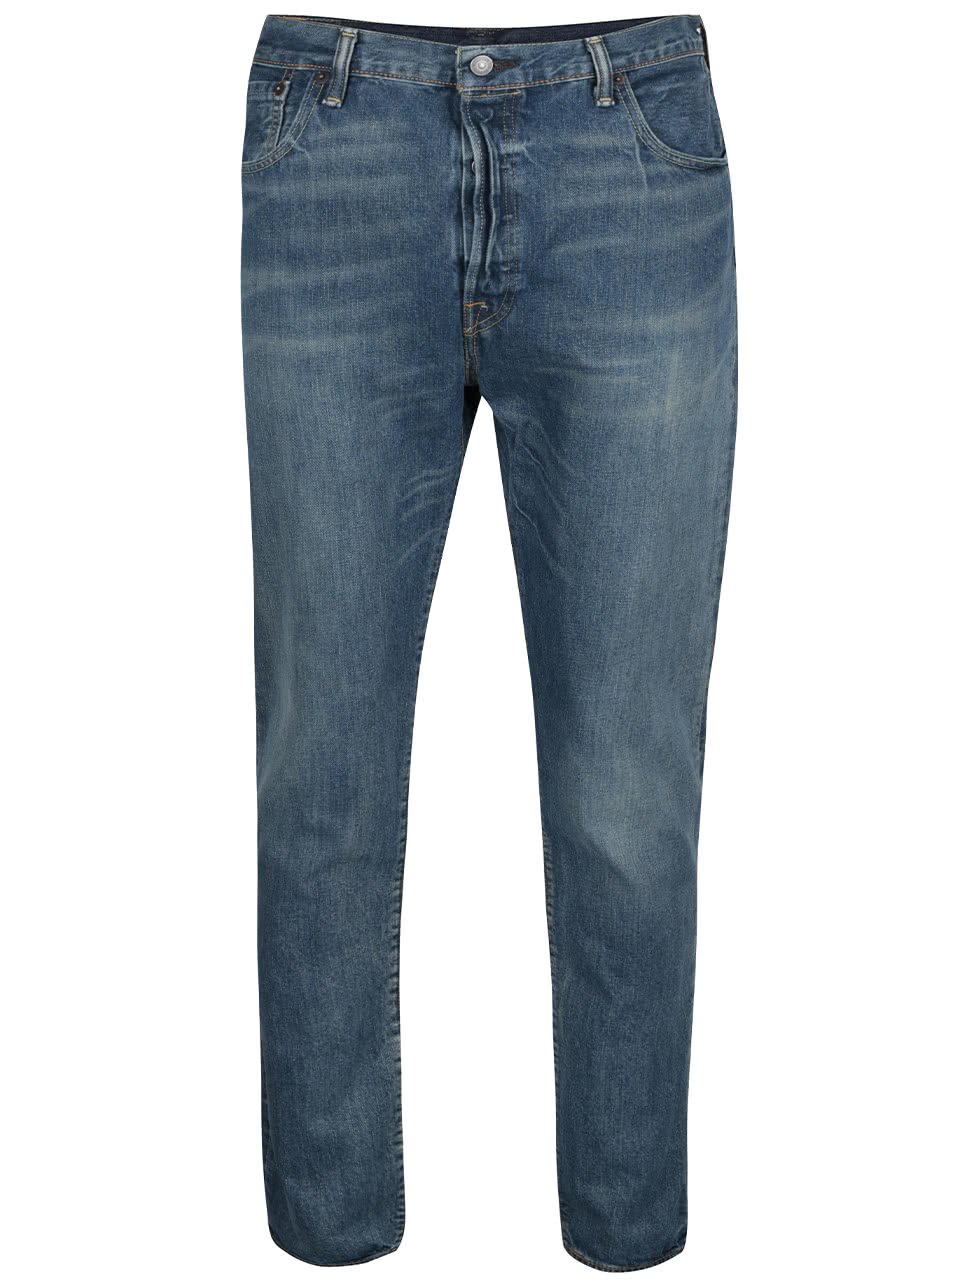 Modré pánské džíny s vyšisovaným efektem Levi's® 501®